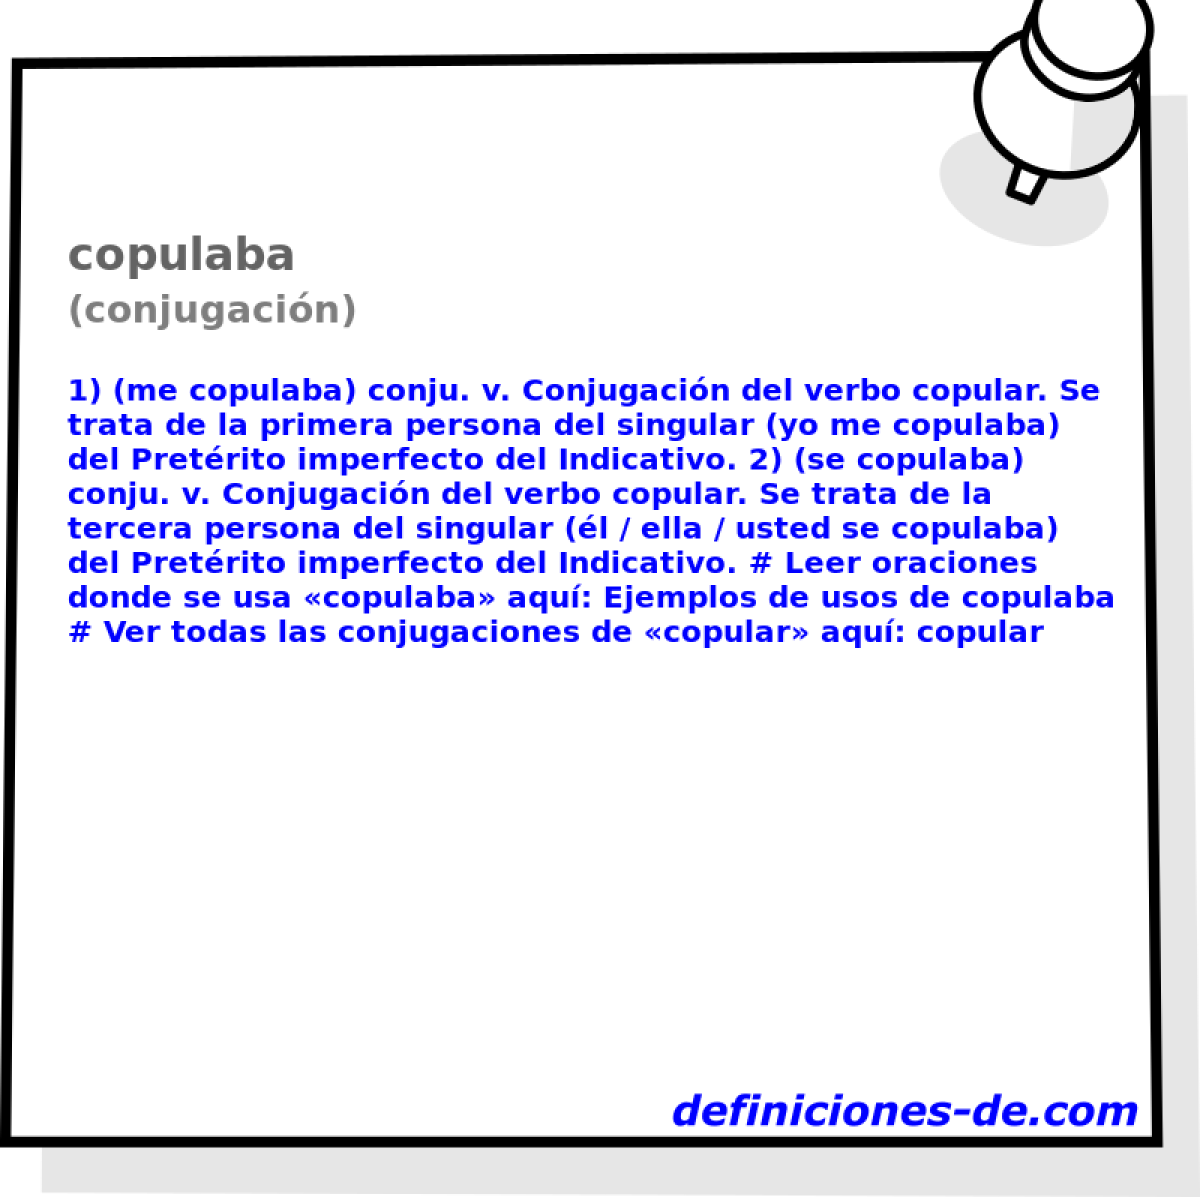 copulaba (conjugacin)